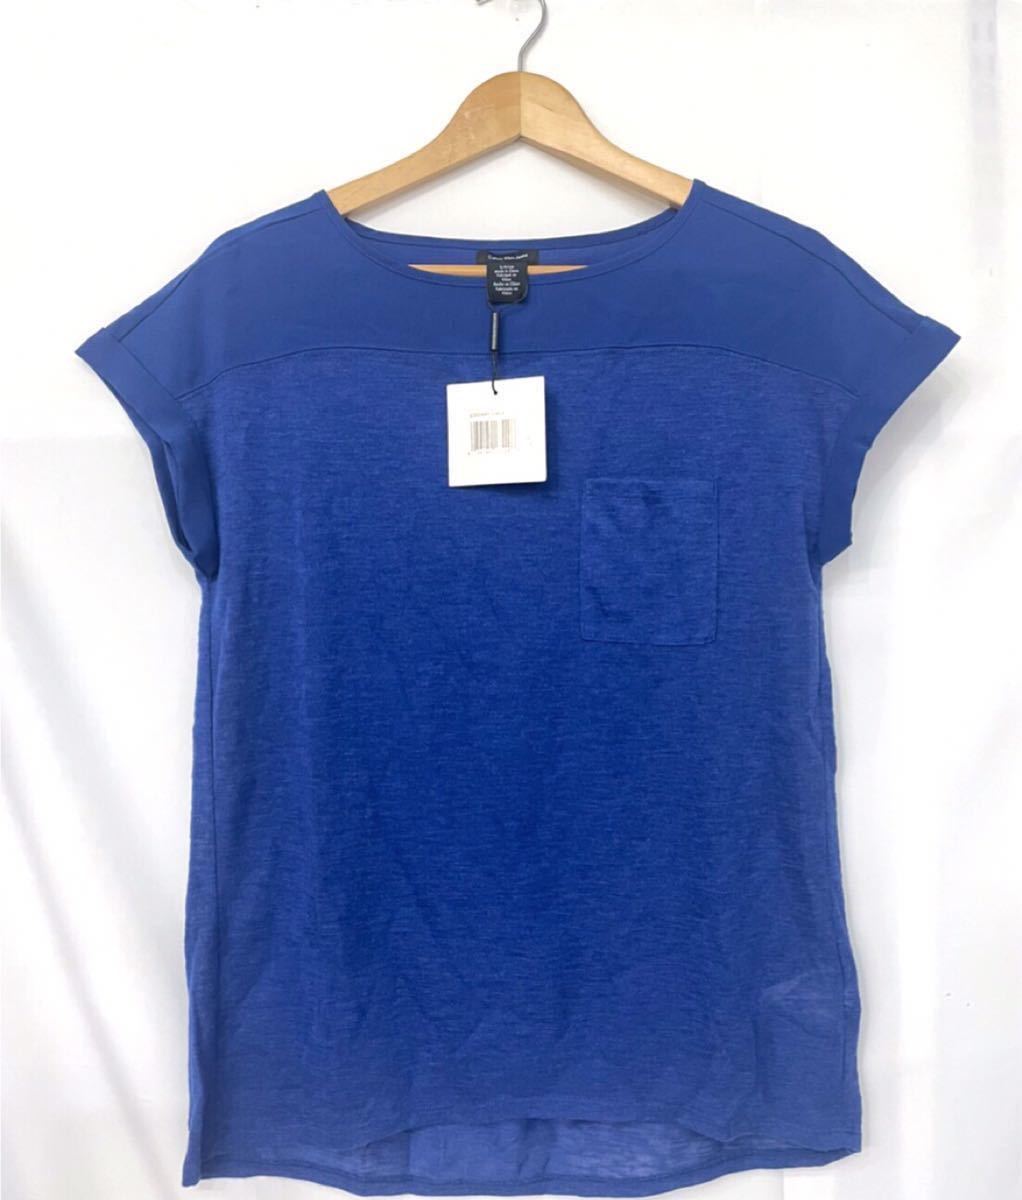  новый товар #CK Calvin Klein женский трикотаж с коротким рукавом рубашка XS голубой!